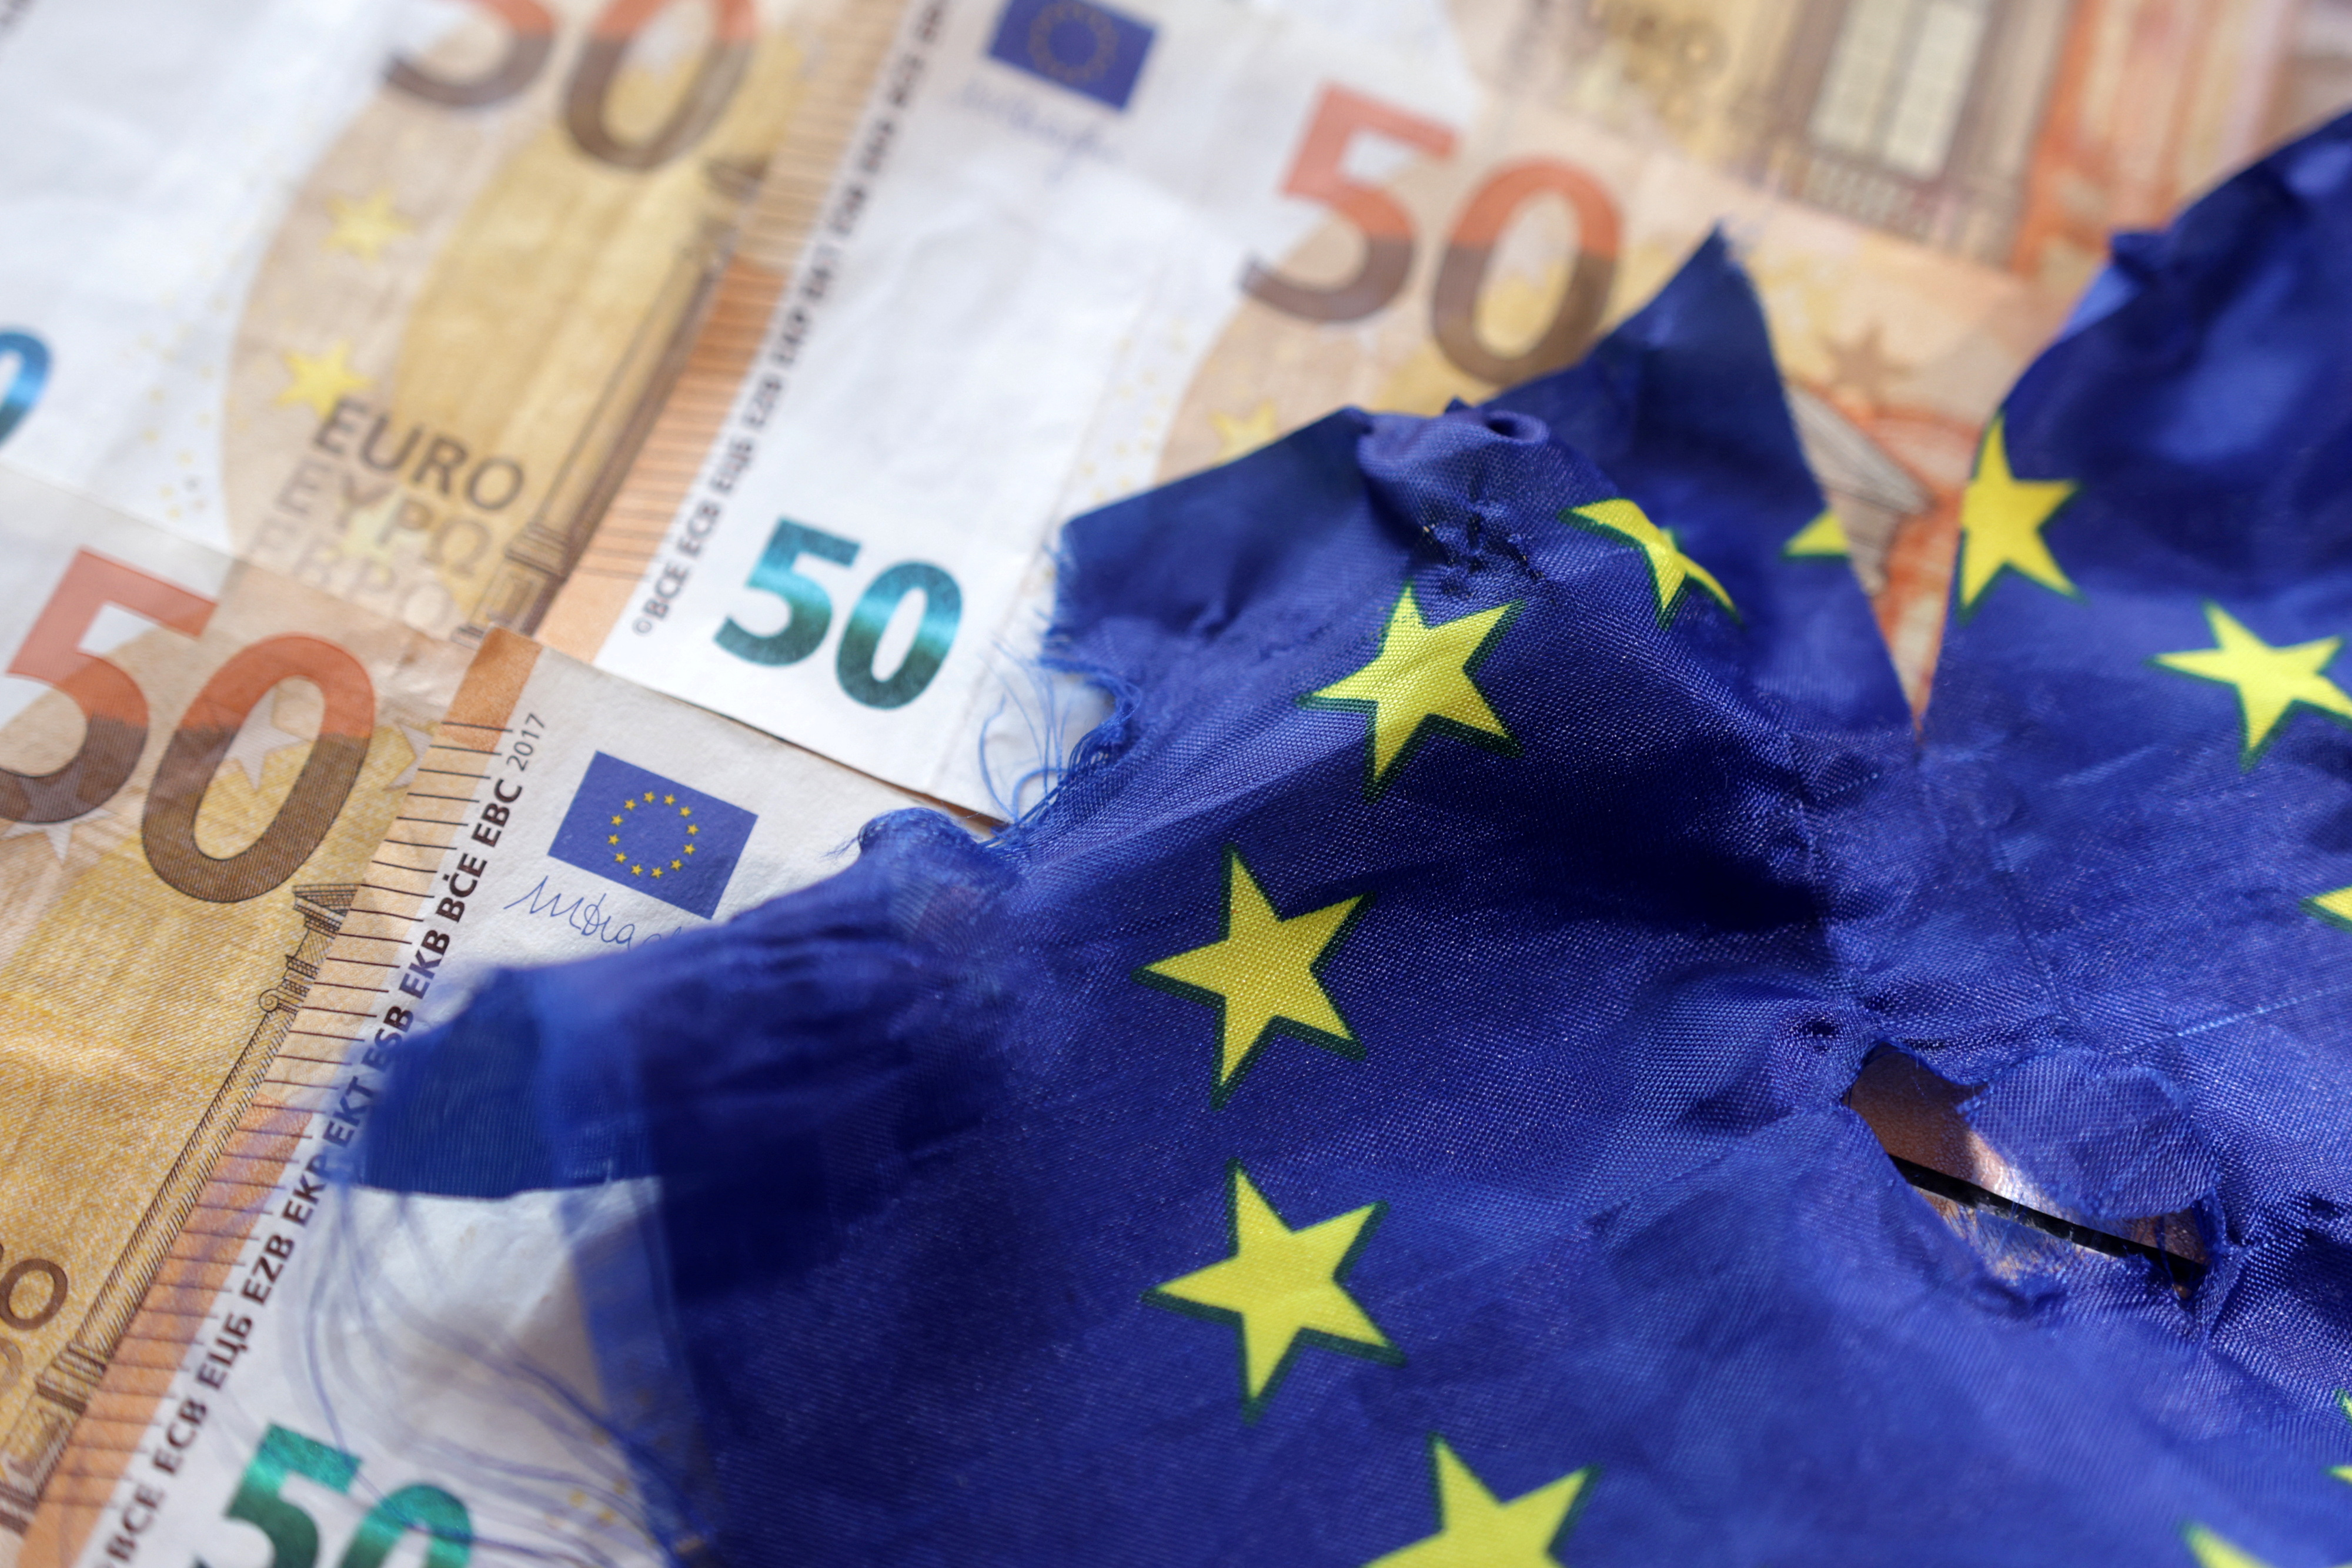 Taxer à 2% le patrimoine des milliardaires européens rapporterait 40 milliards d'euros à l'Europe